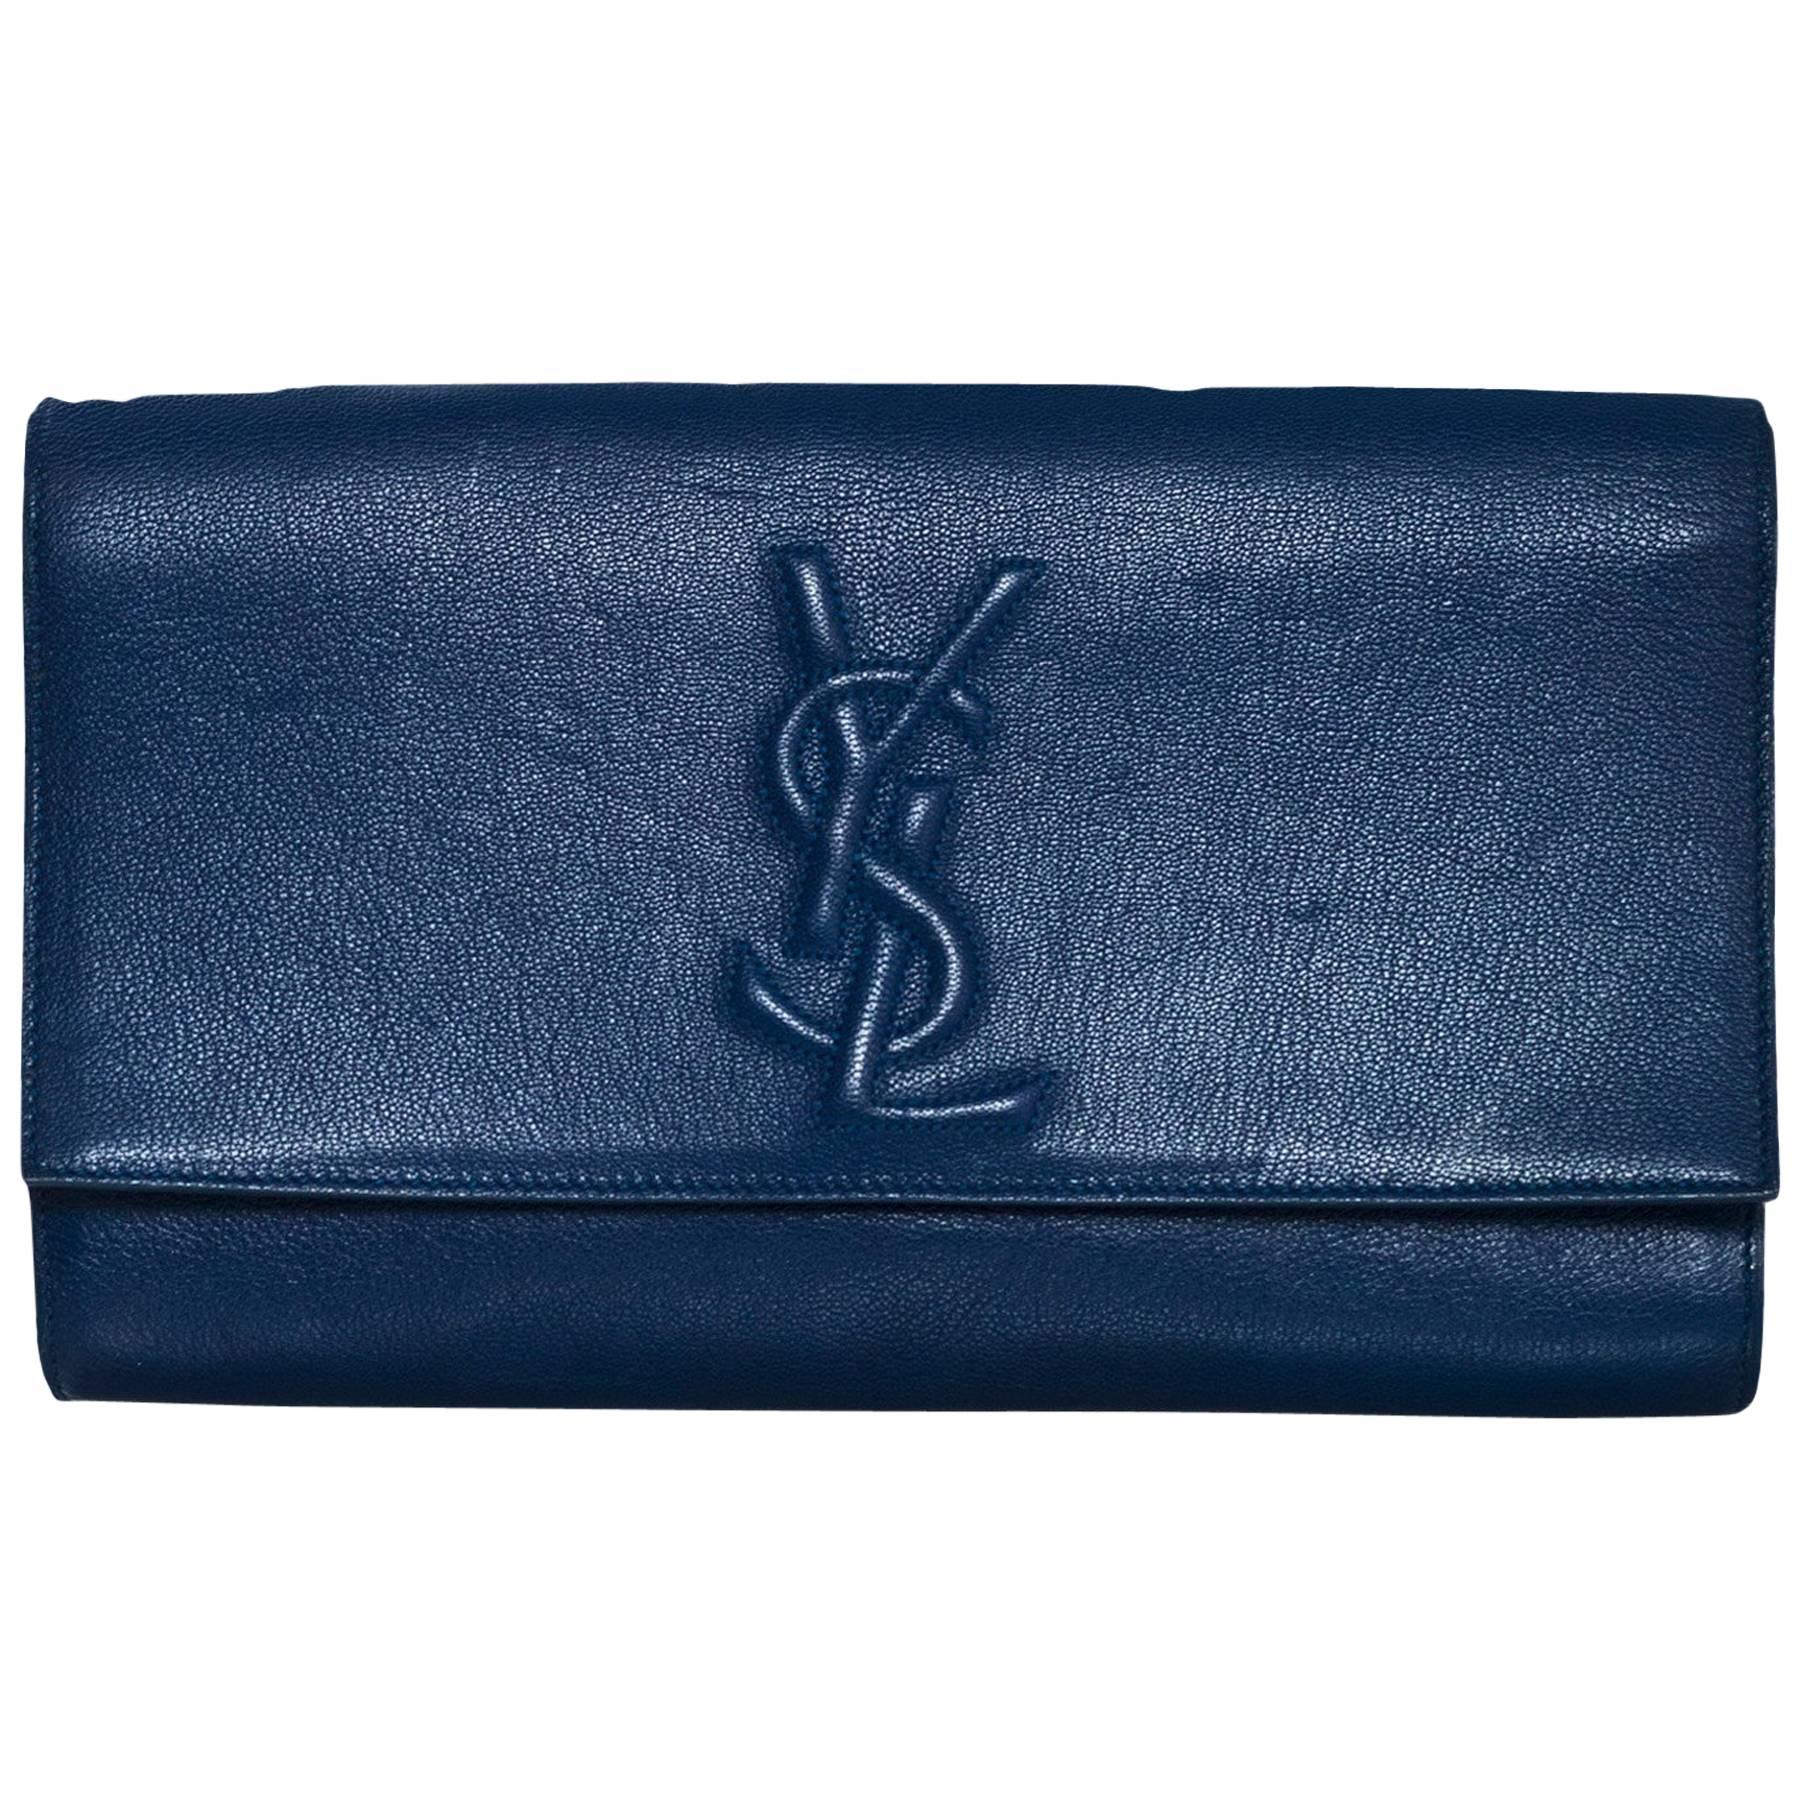 Yves Saint Laurent Blue Large Belle De Jour Clutch Bag